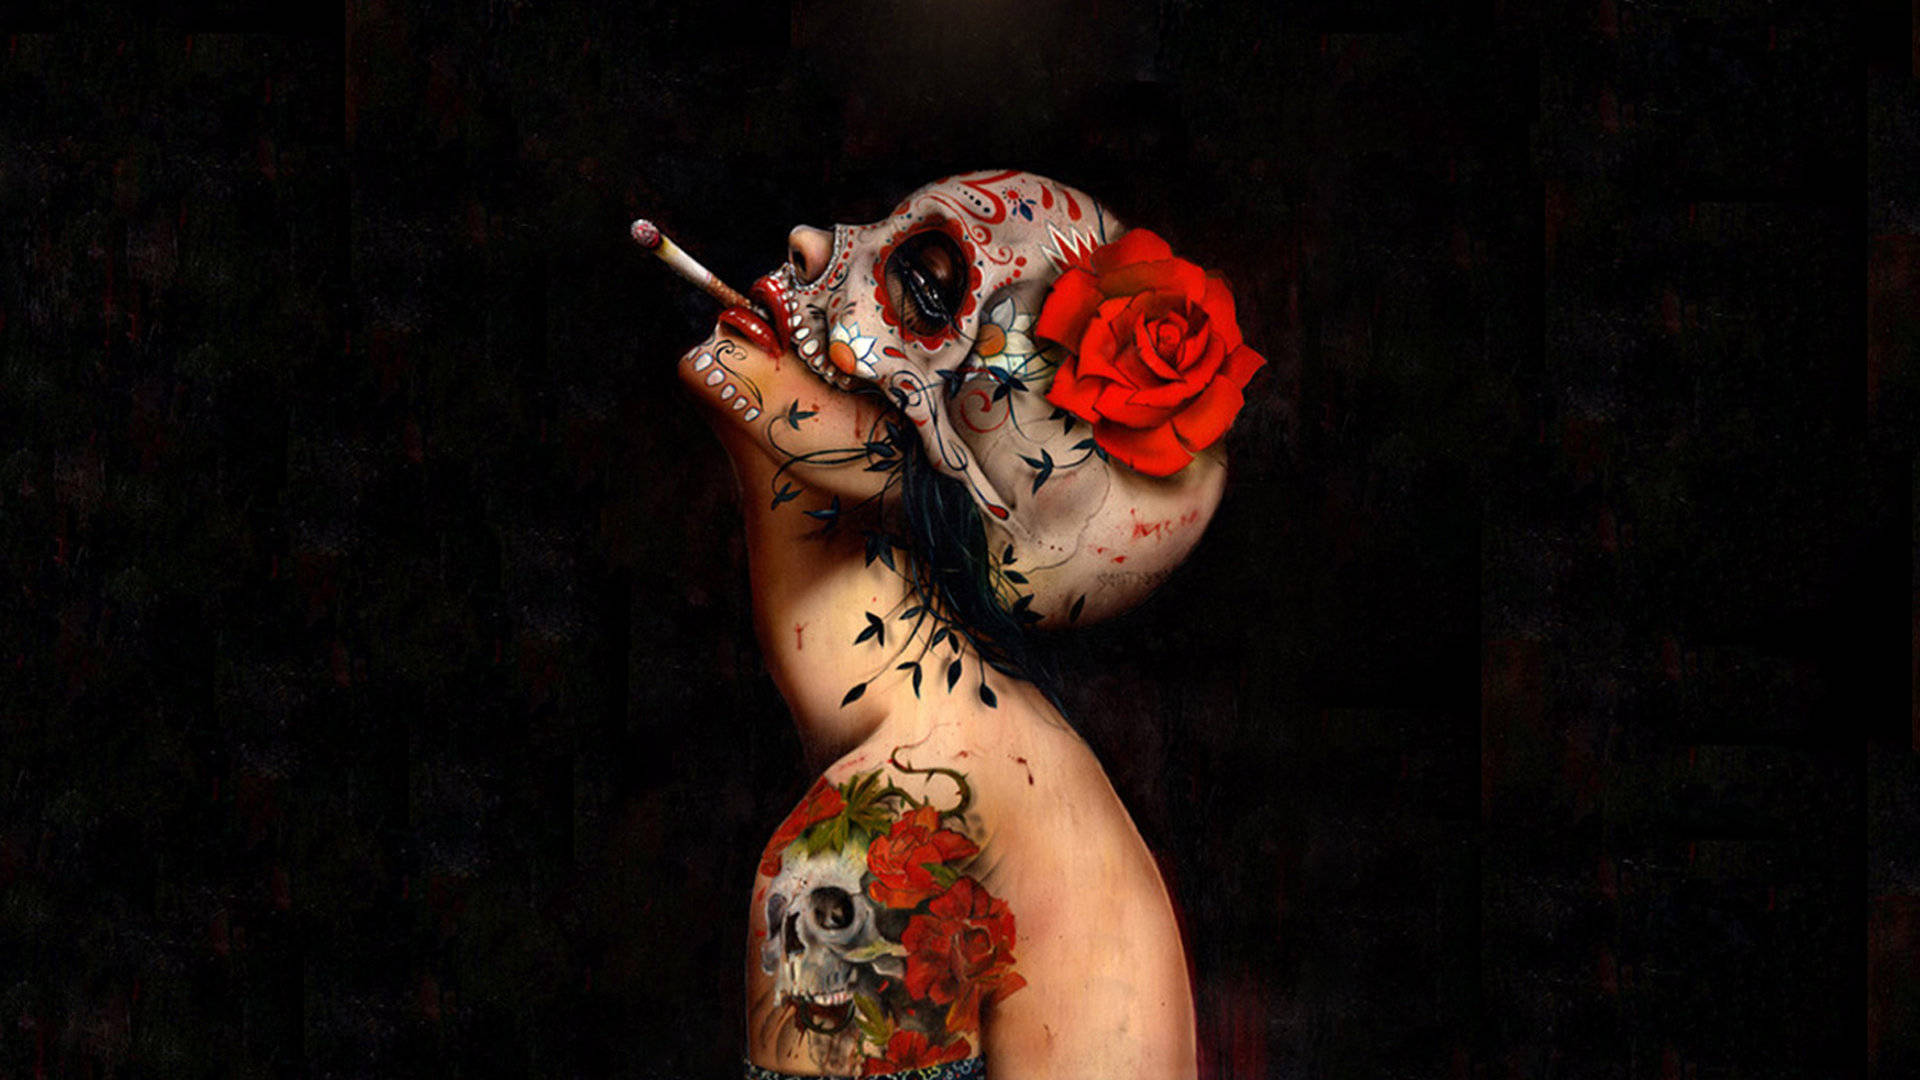 Caption: Chola Sugar Skulls - A fusion of culture and art Wallpaper